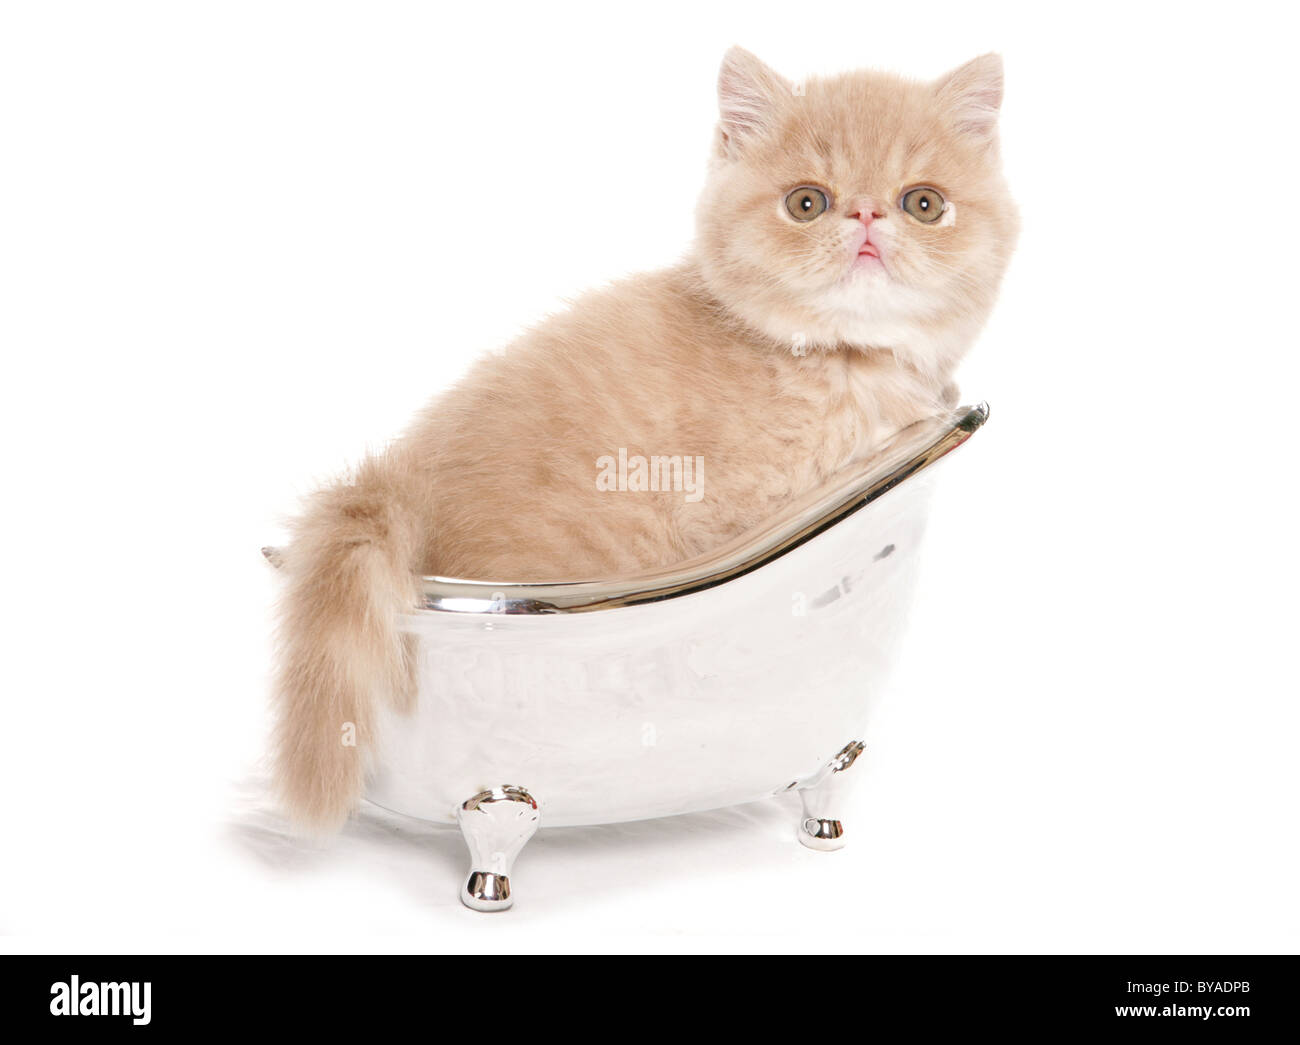 exotic kitten in a small silver bath studio portrait Stock Photo